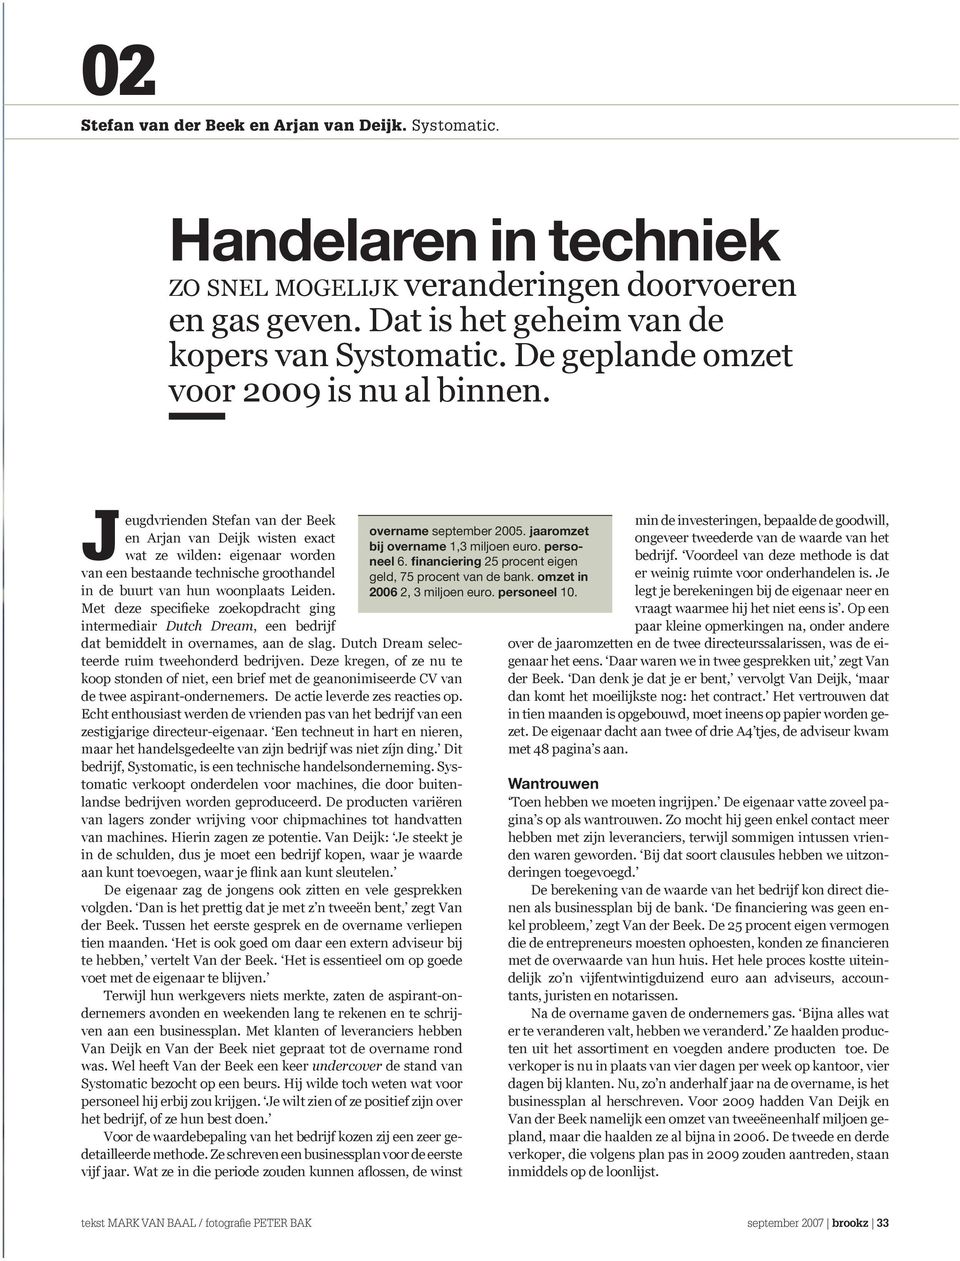 Jeugdvrienden Stefan van der Beek en Arjan van Deijk wisten exact wat ze wilden: eigenaar worden van een bestaande technische groothandel in de buurt van hun woonplaats Leiden.